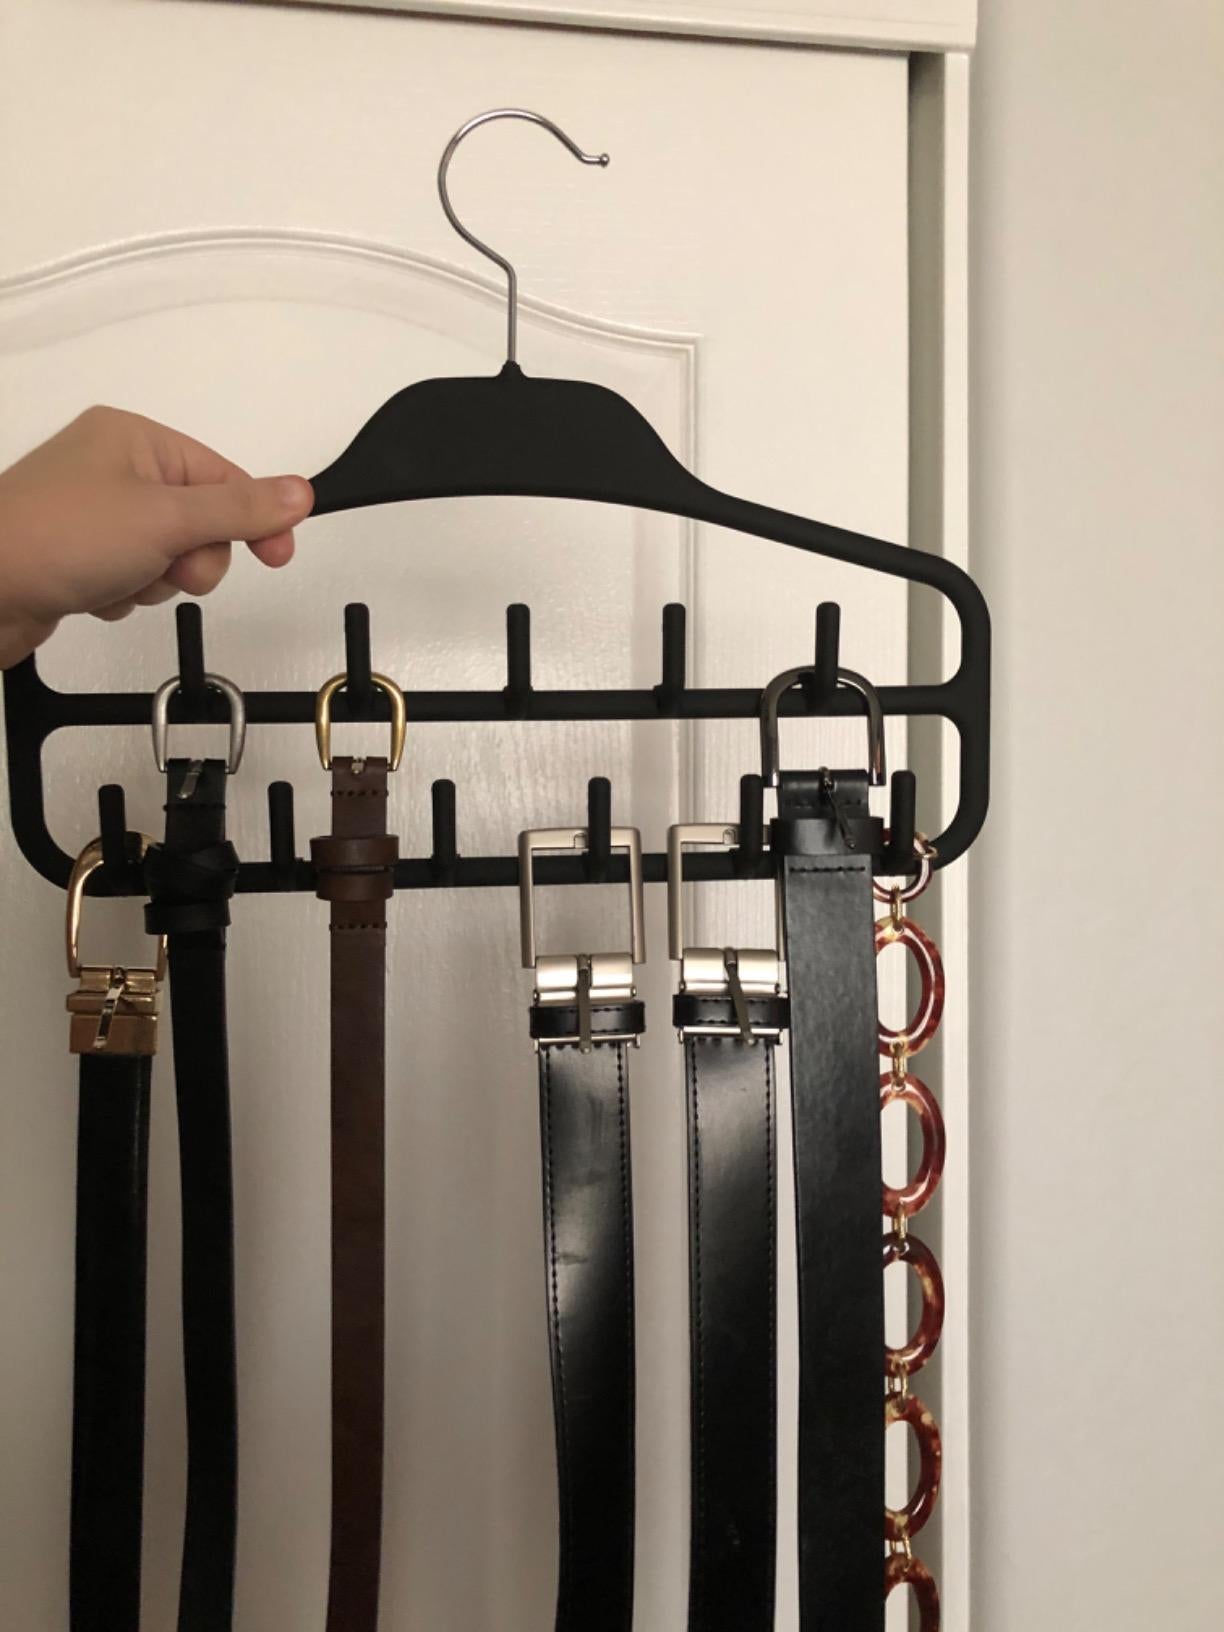 Belts placed on belt organizing hanger